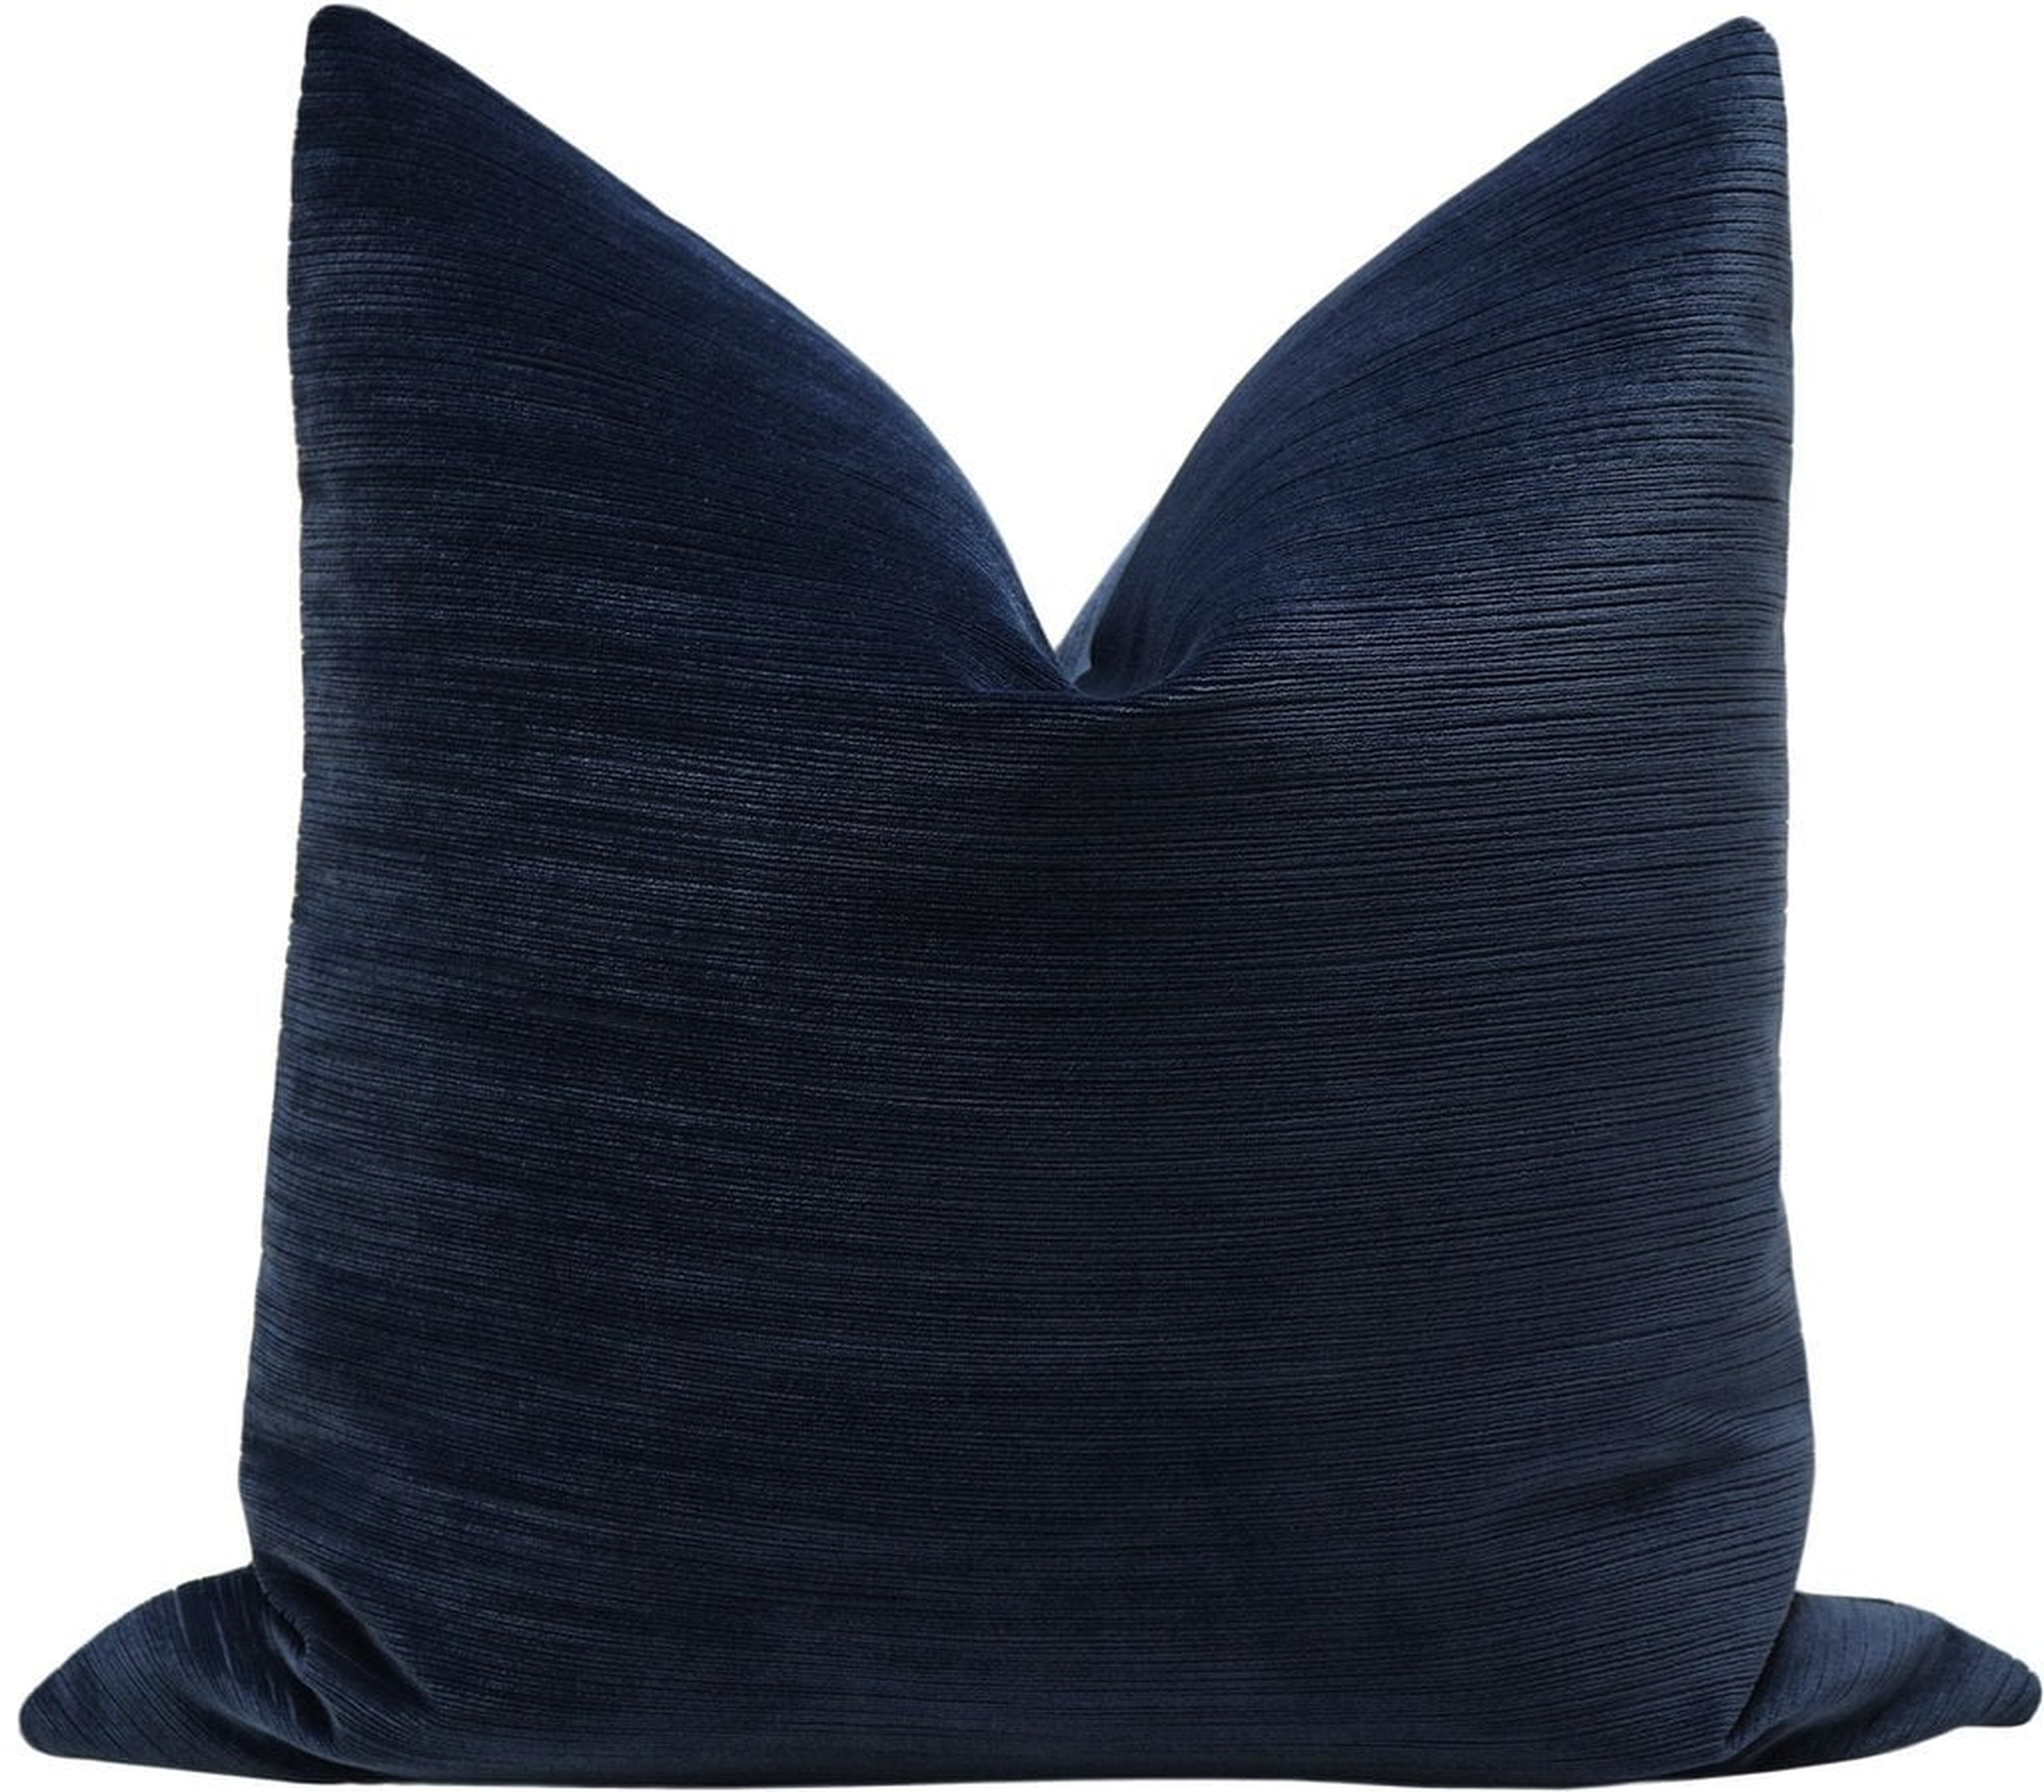 Strie Velvet Pillow Cover, Navy Blue, 20" x 20" - Little Design Company